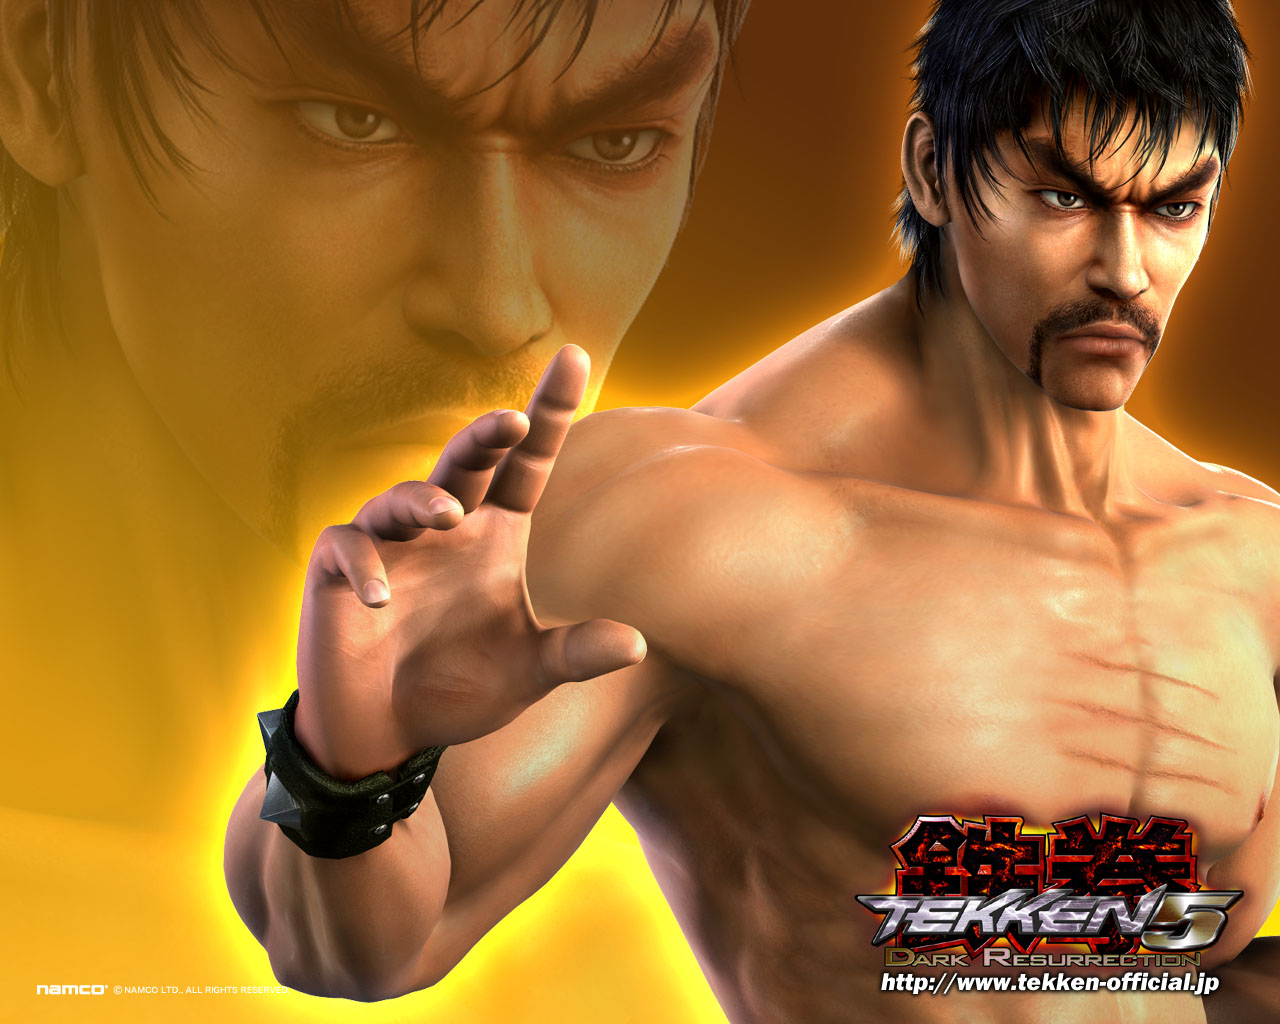 Tekken 5: Dark Resurrection Picture